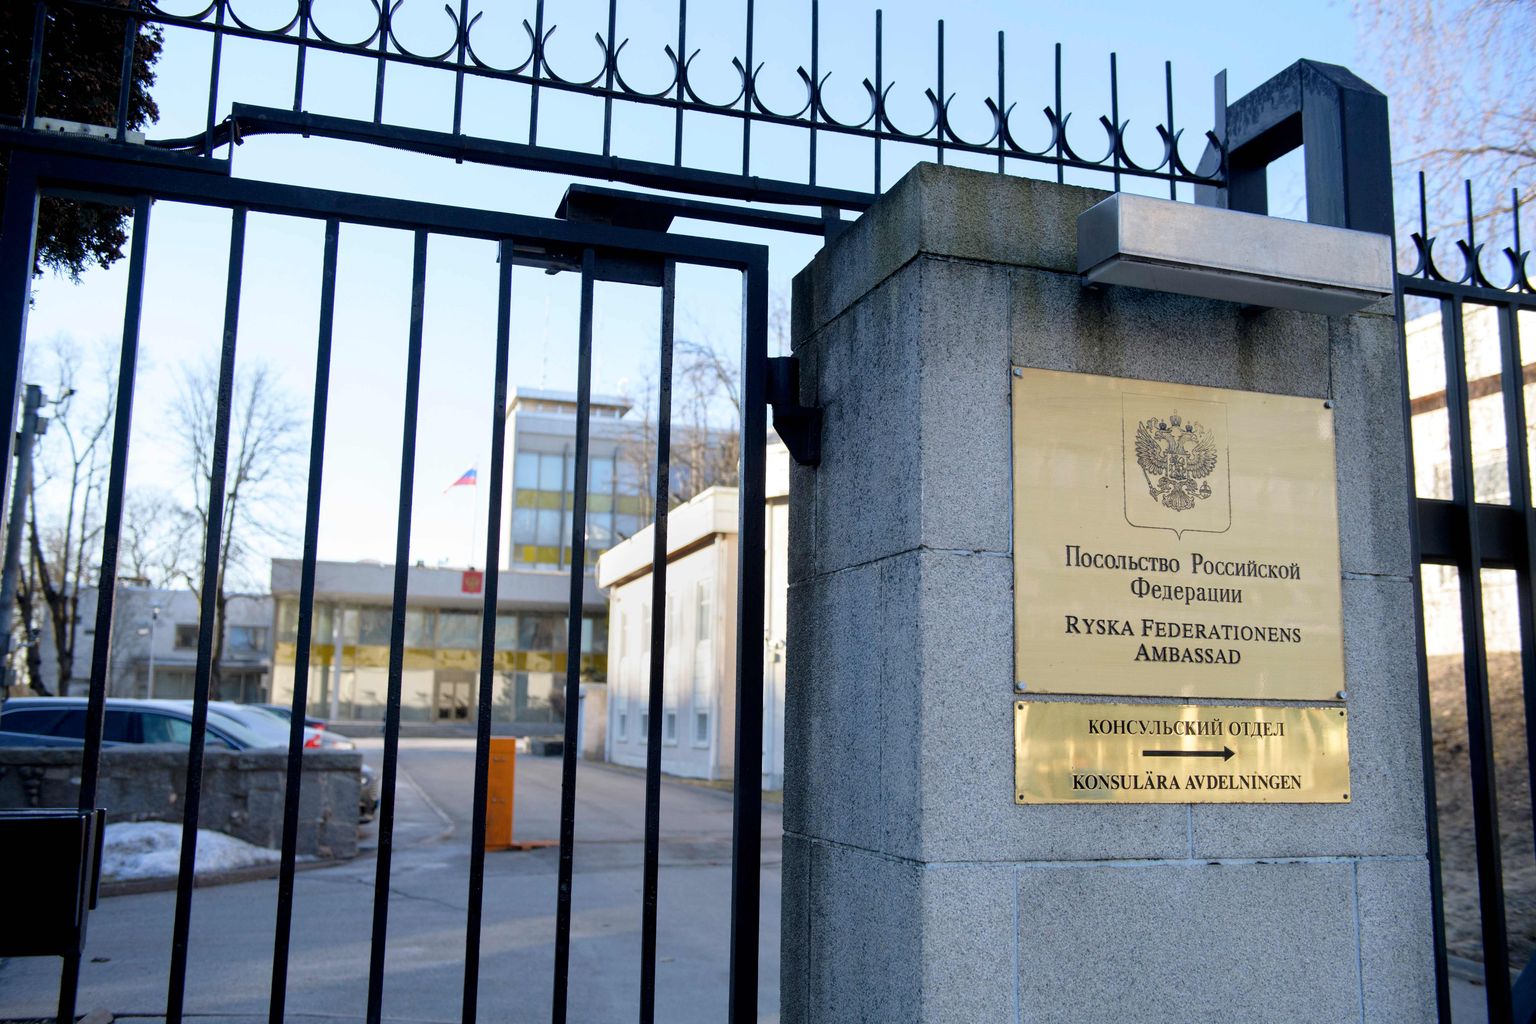 Venemaa saatkond Stockholmis.